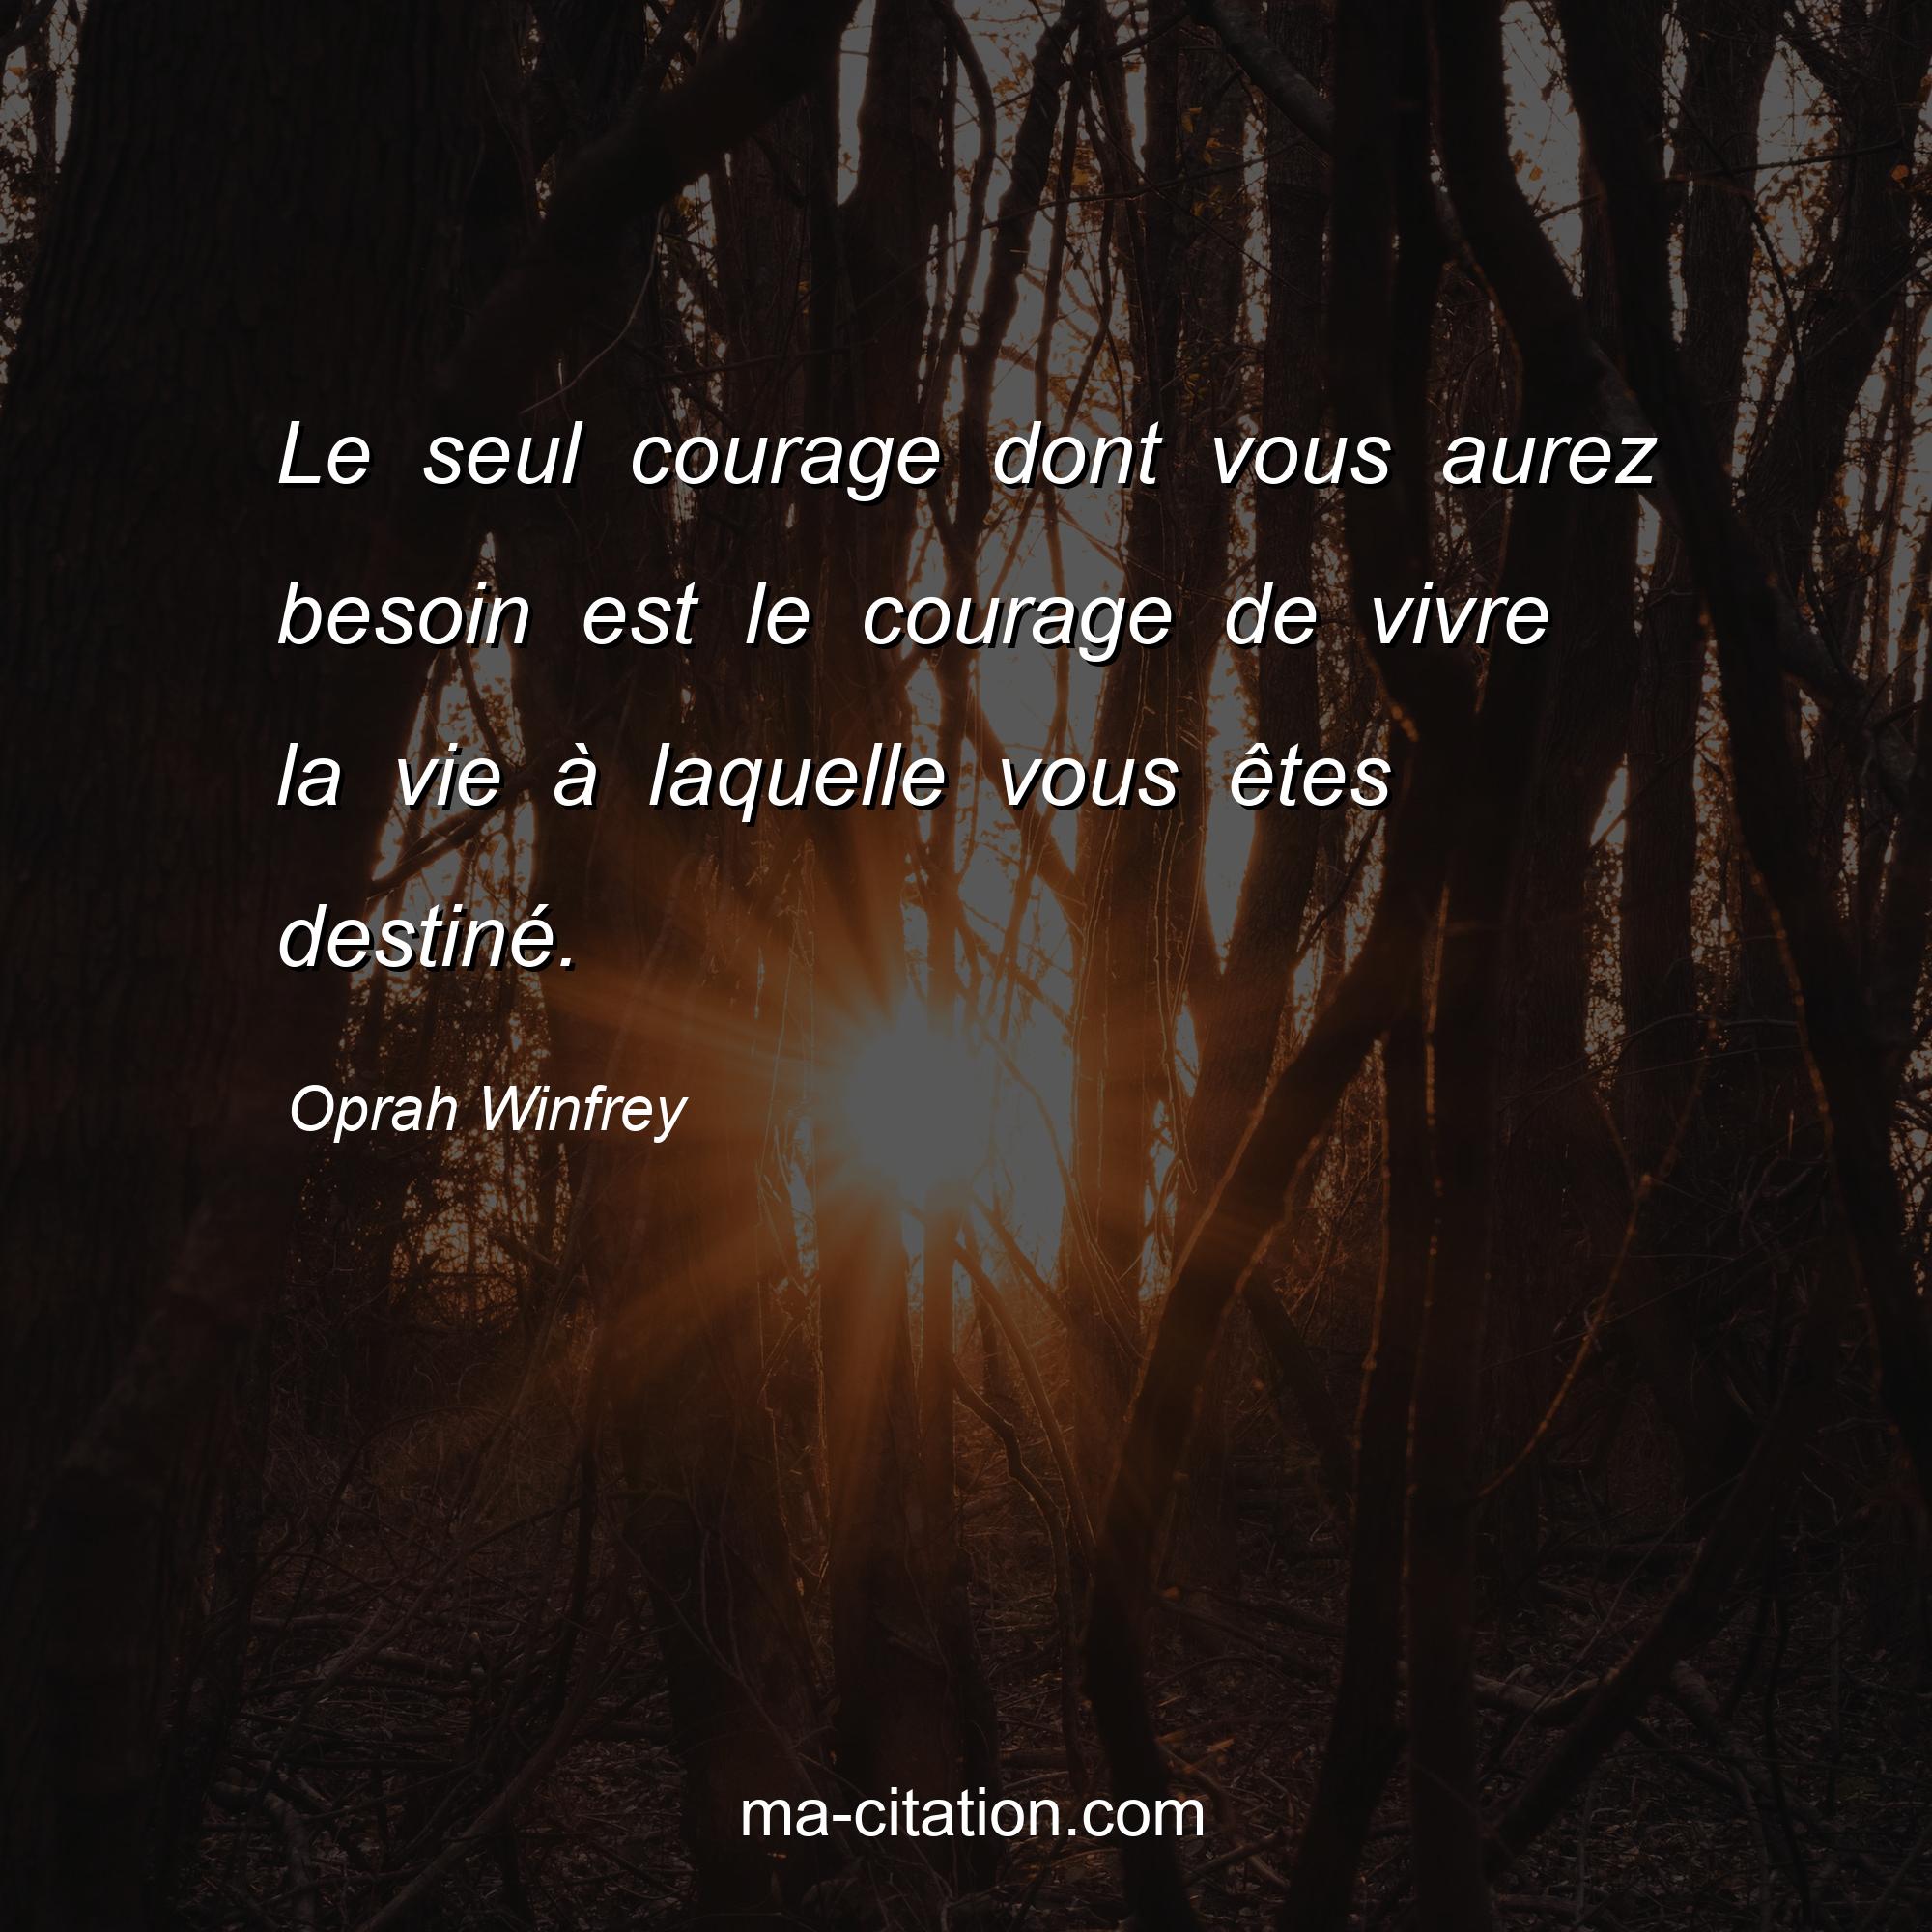 Oprah Winfrey : Le seul courage dont vous aurez besoin est le courage de vivre la vie à laquelle vous êtes destiné.